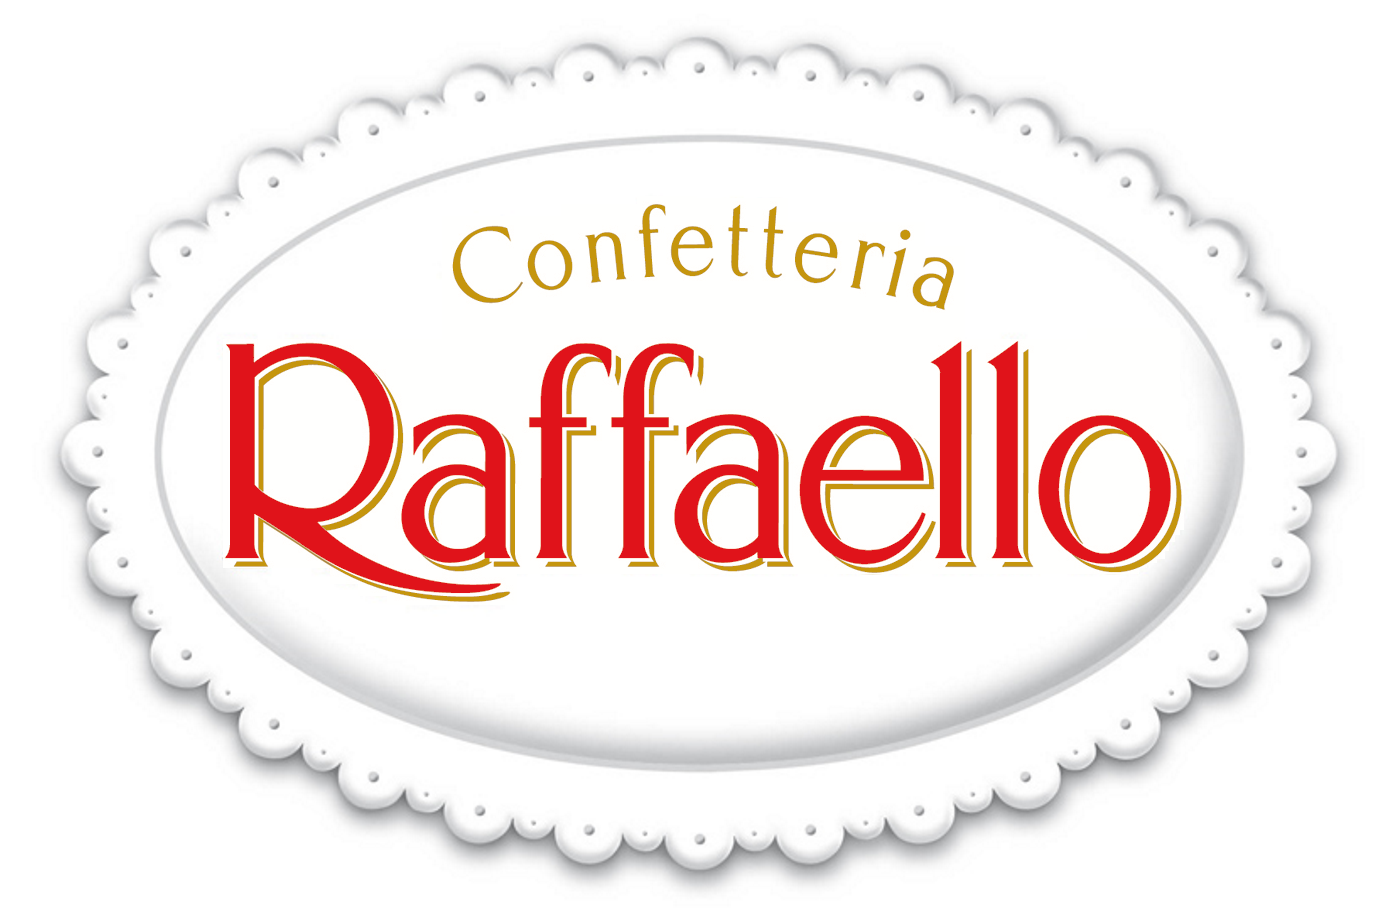 Confetteria Raffaelo